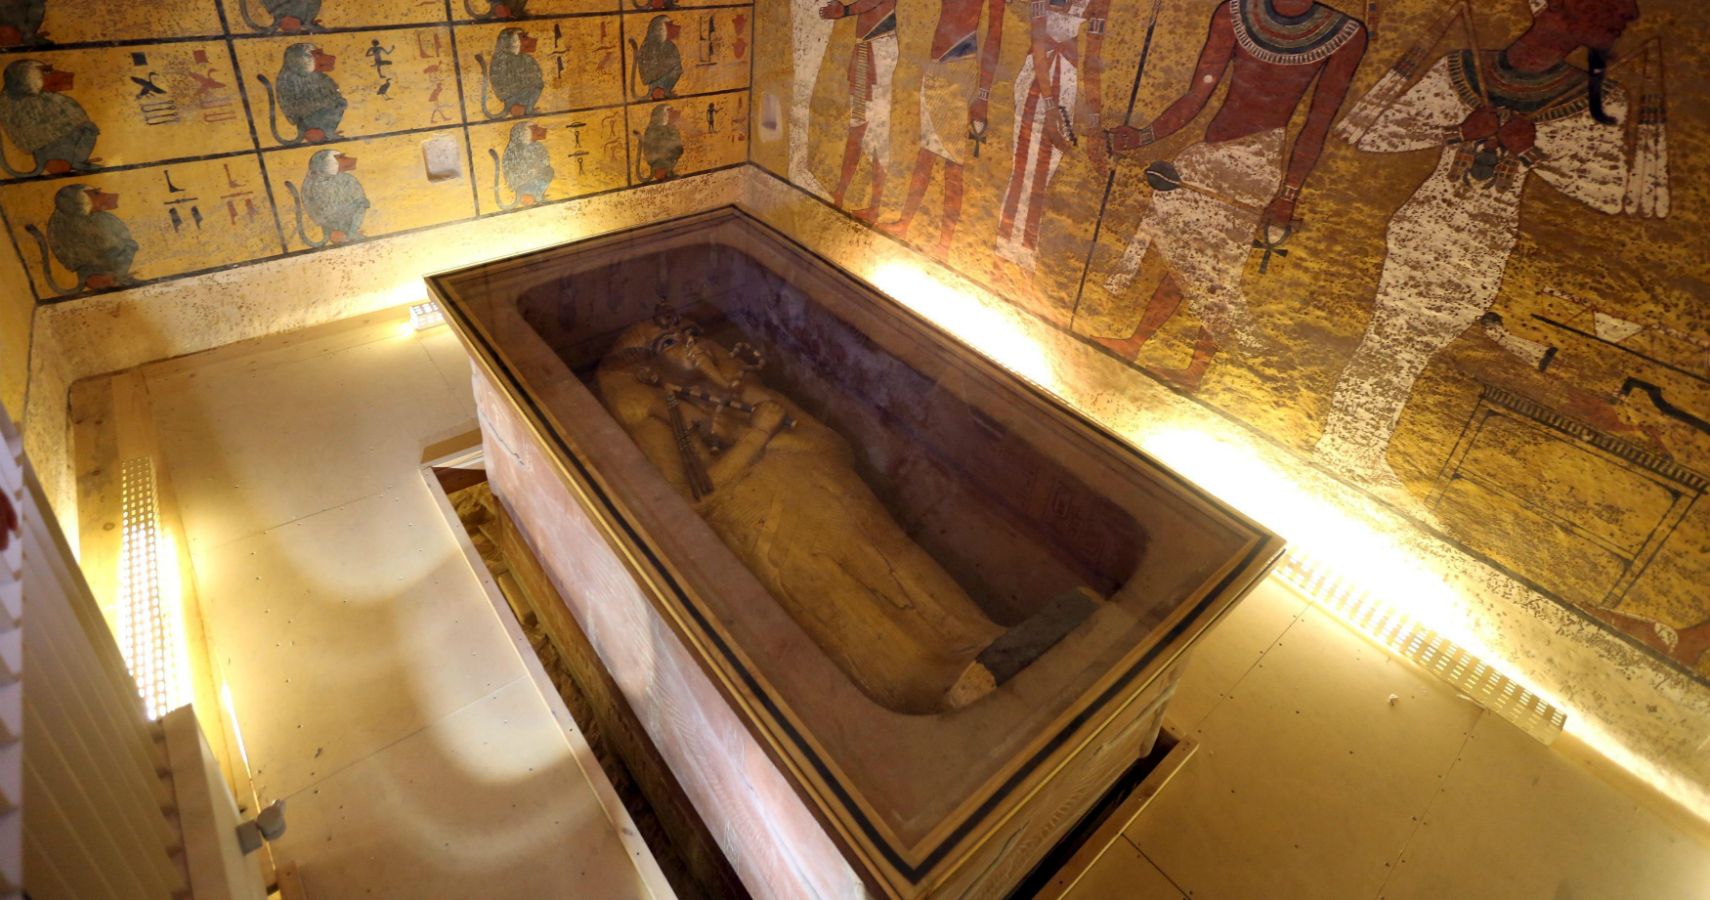 1673231320 510 Afinal a tumba do rei Tutancamon nao tem camaras secretas